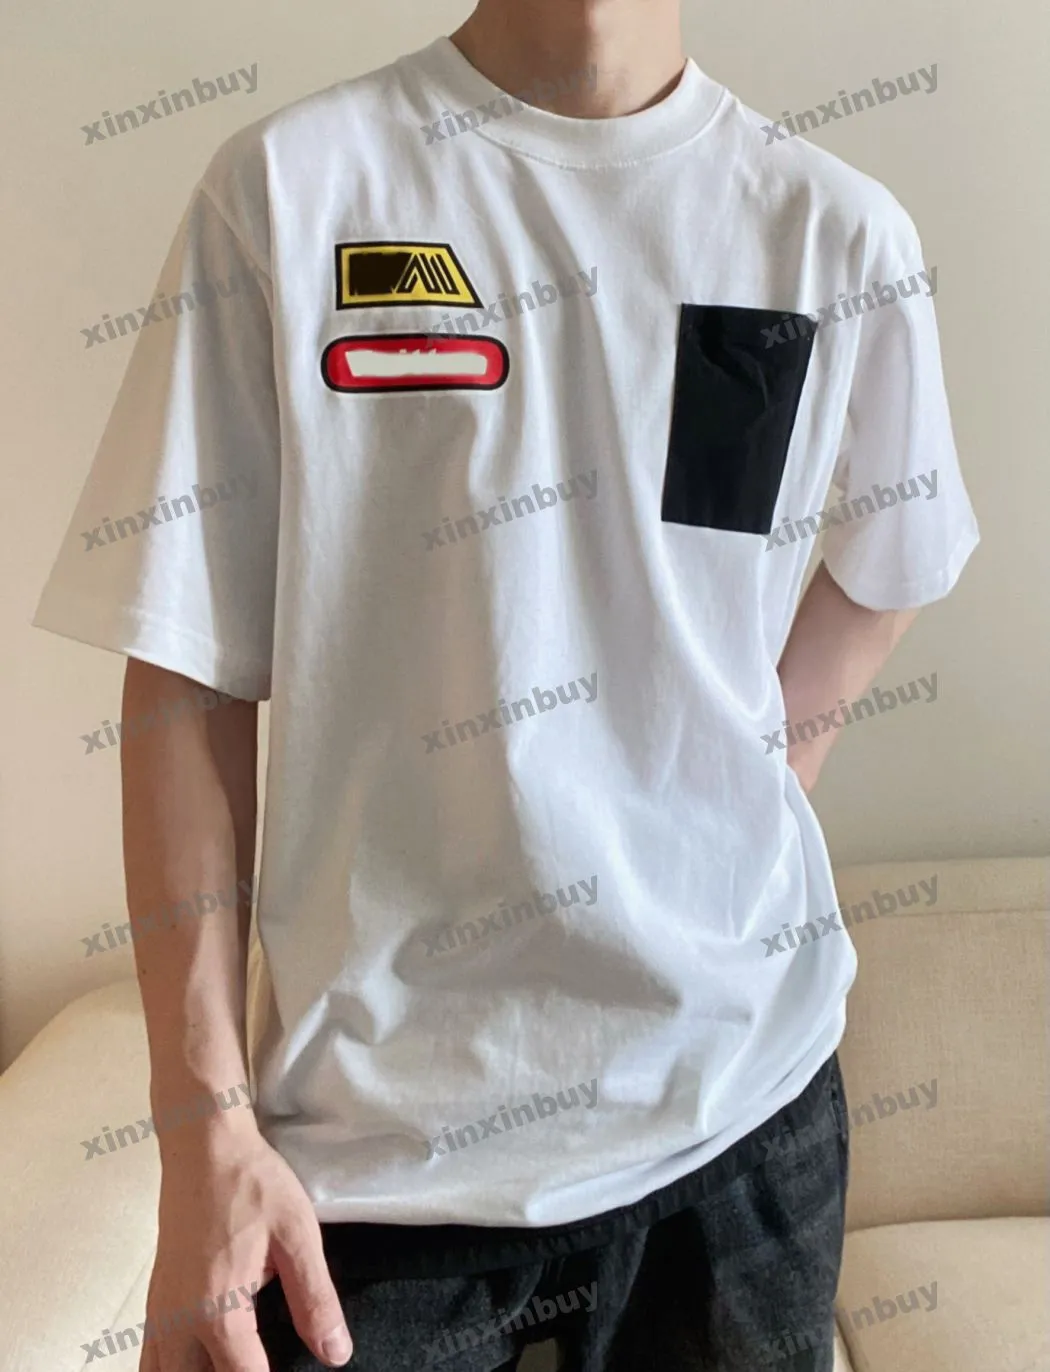 Xinxinbuy Men Designer T-shirt T-shirt 23SS Gekleurde letters Patroon afdrukken Nylon Pocket Korte mouw katoen vrouwen zwart wit xs-2xl